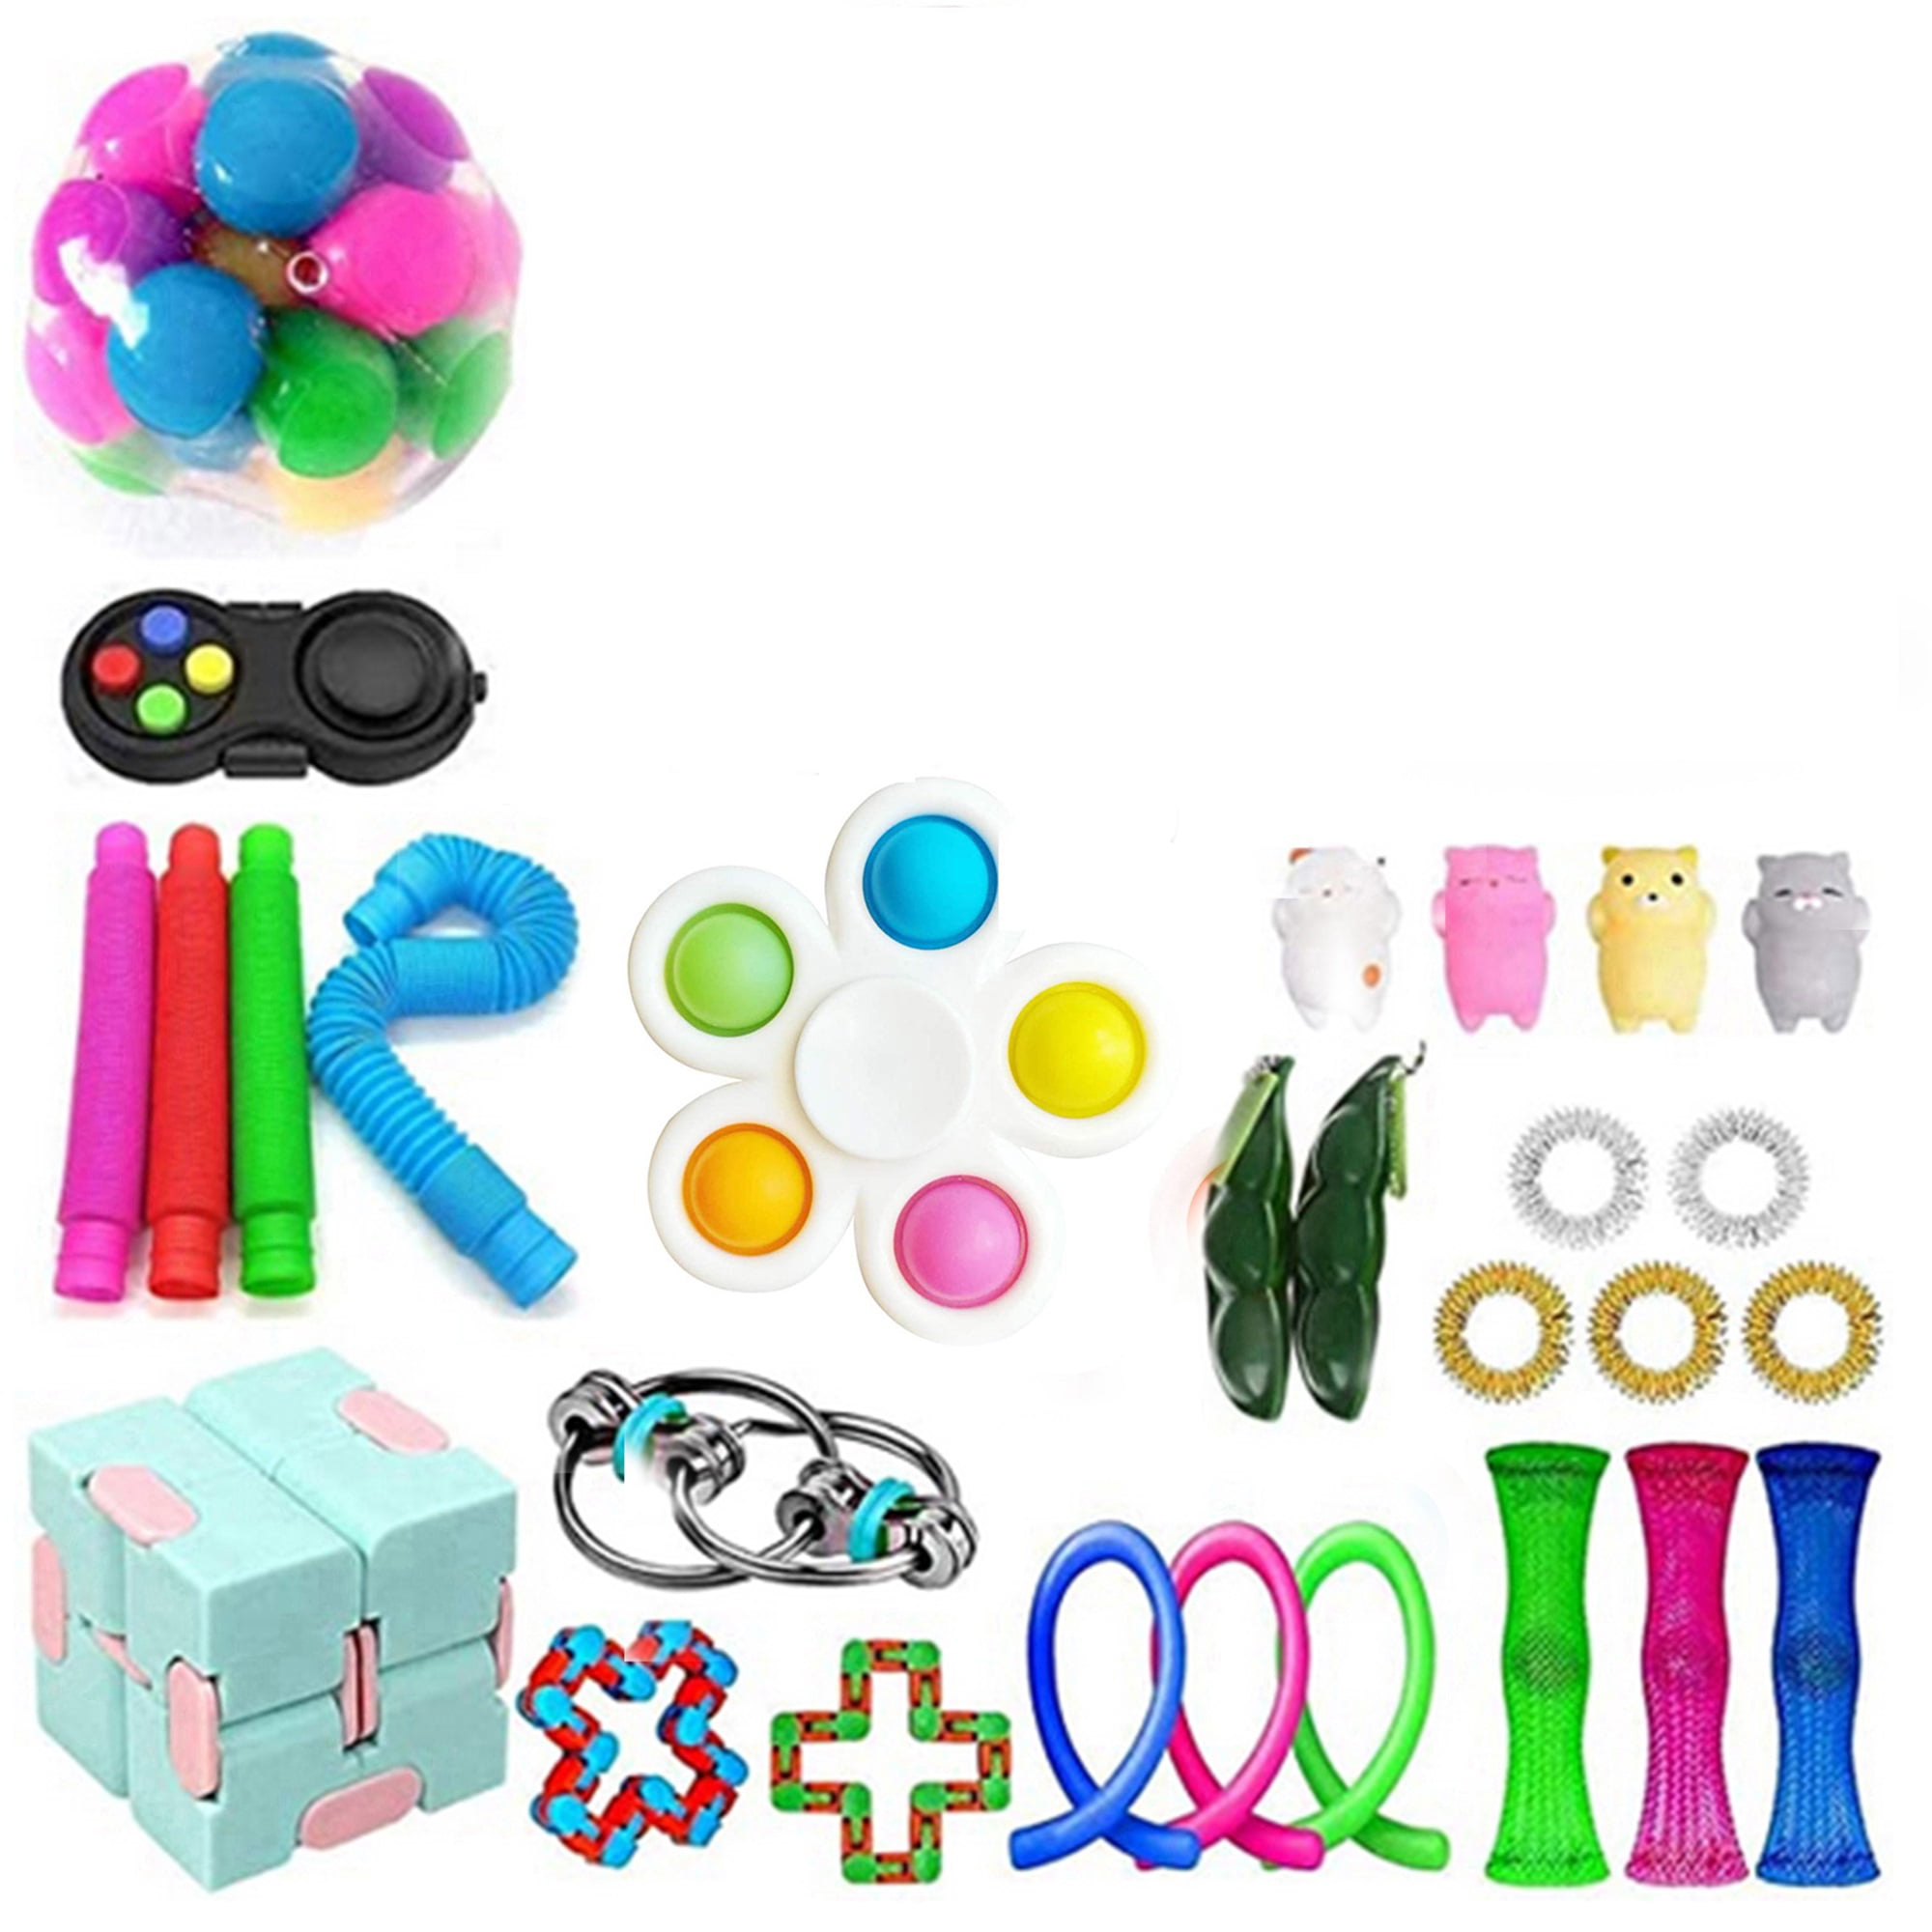 JAEZZIY Stress Relief Fidget Toy Pack, Sensory Fidget Toys Pack with Push  Pop Bubble Simple Dimple,Decompression Fidget Toys Set with Infinite